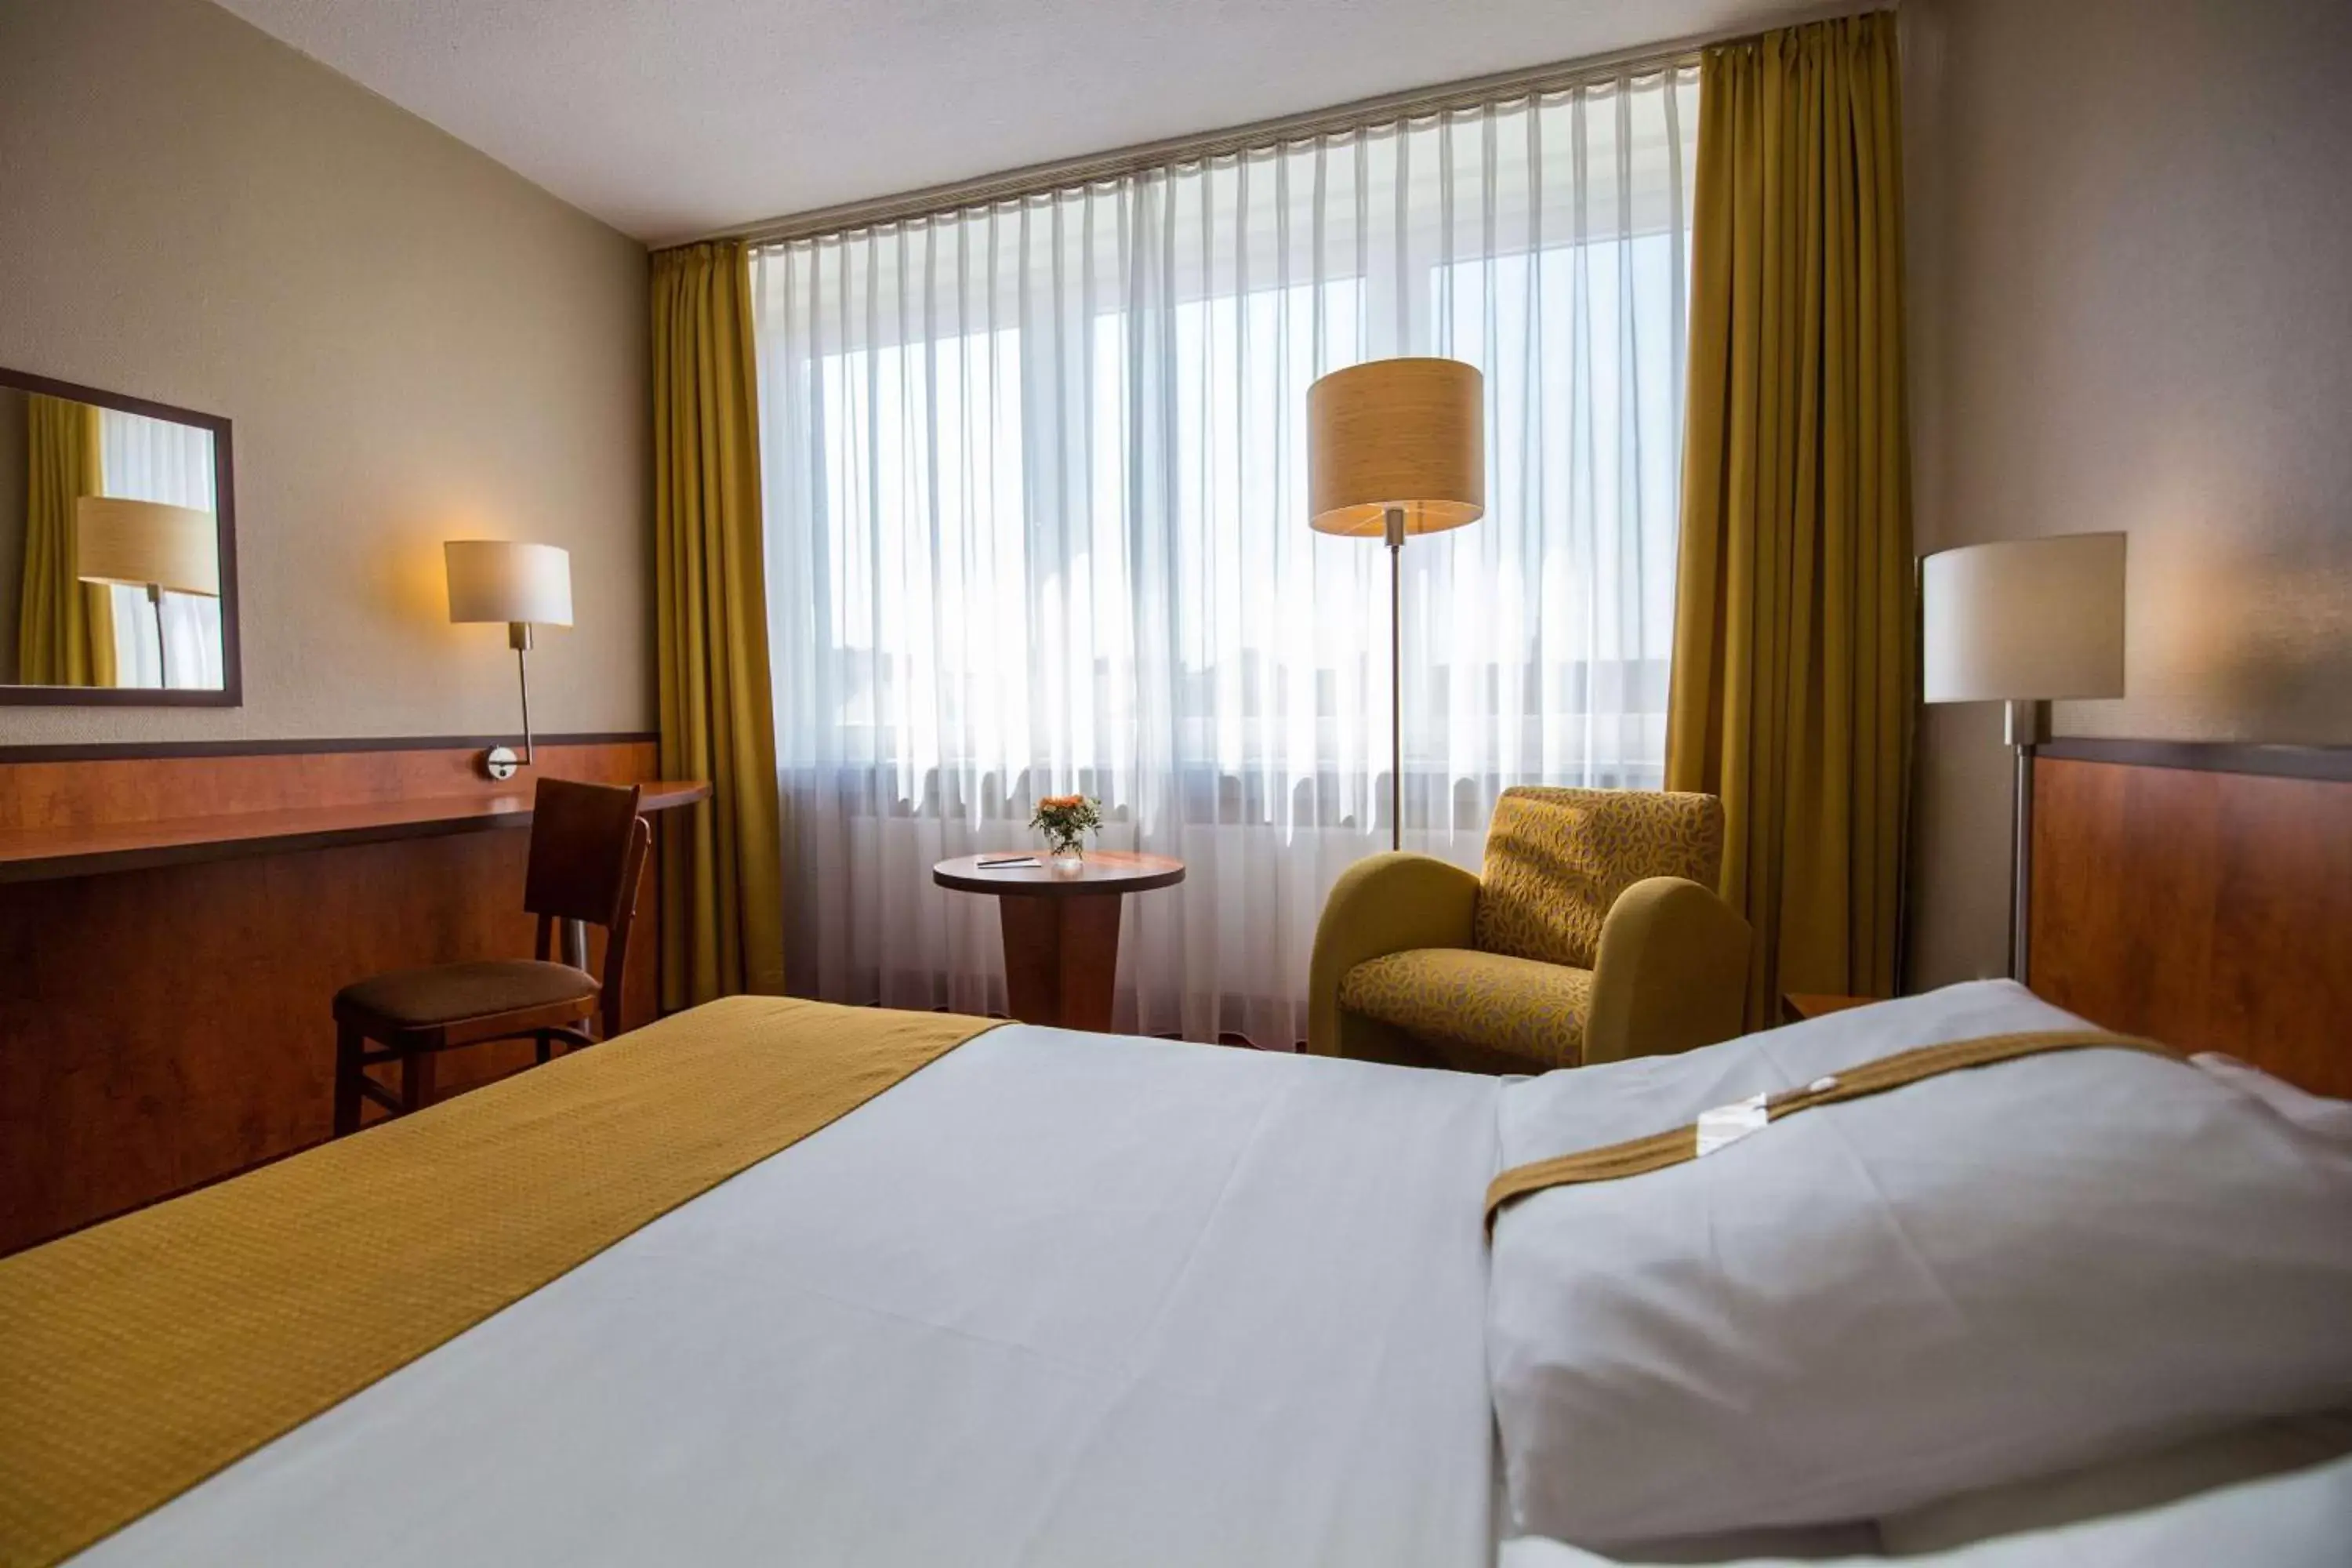 Bedroom, Bed in Best Western Plus Hotel Bautzen